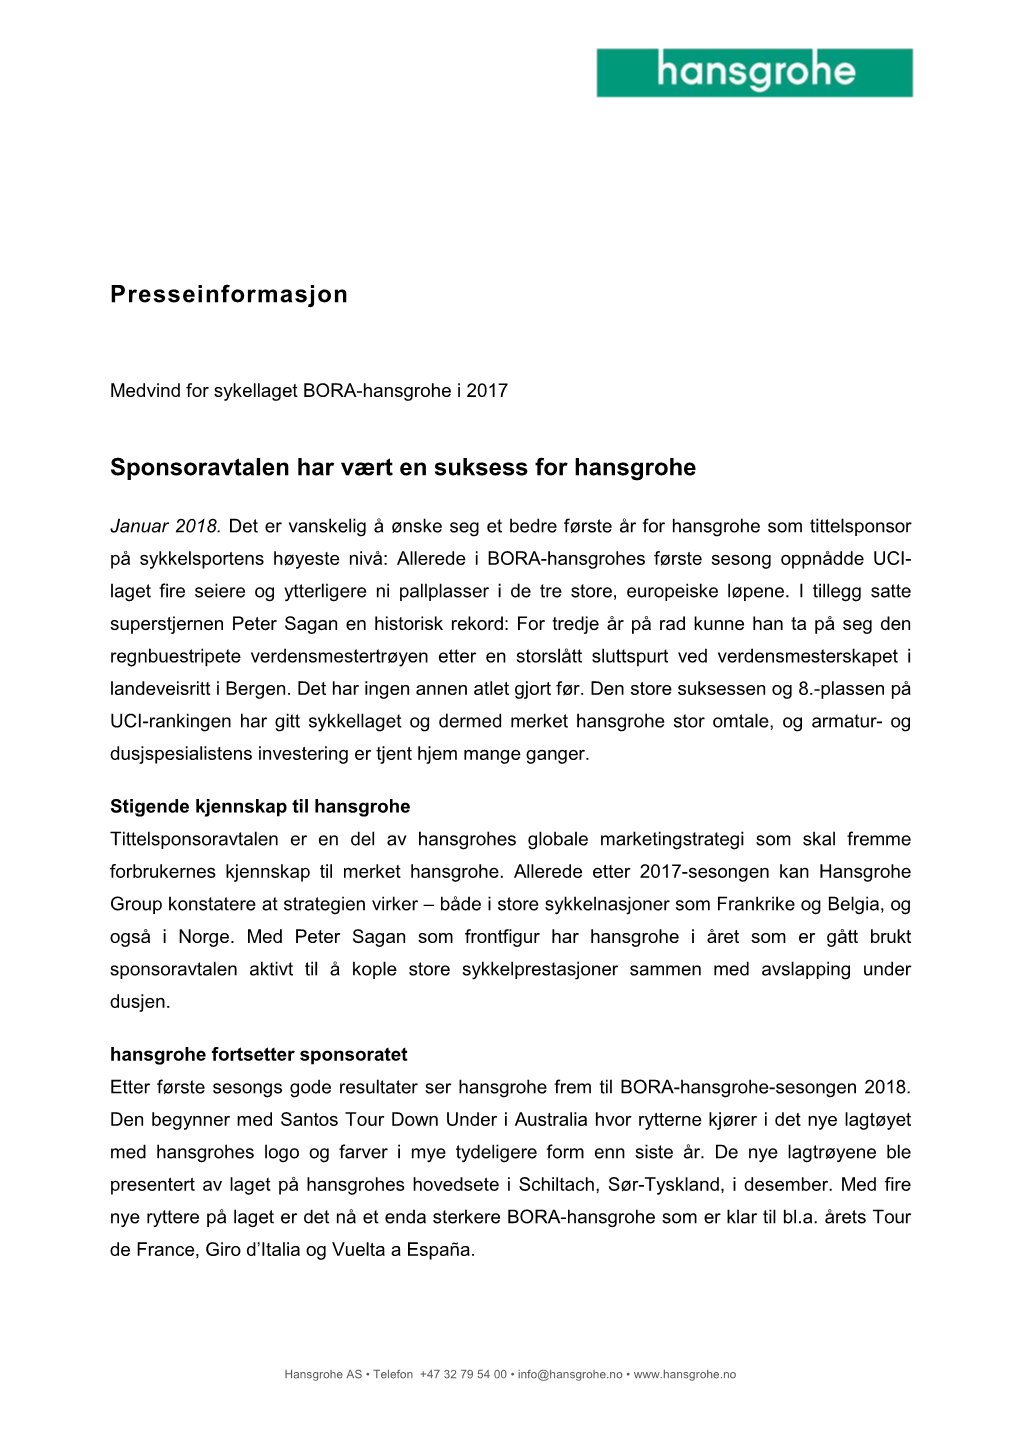 Presseinformasjon Sponsoravtalen Har Vært En Suksess for Hansgrohe